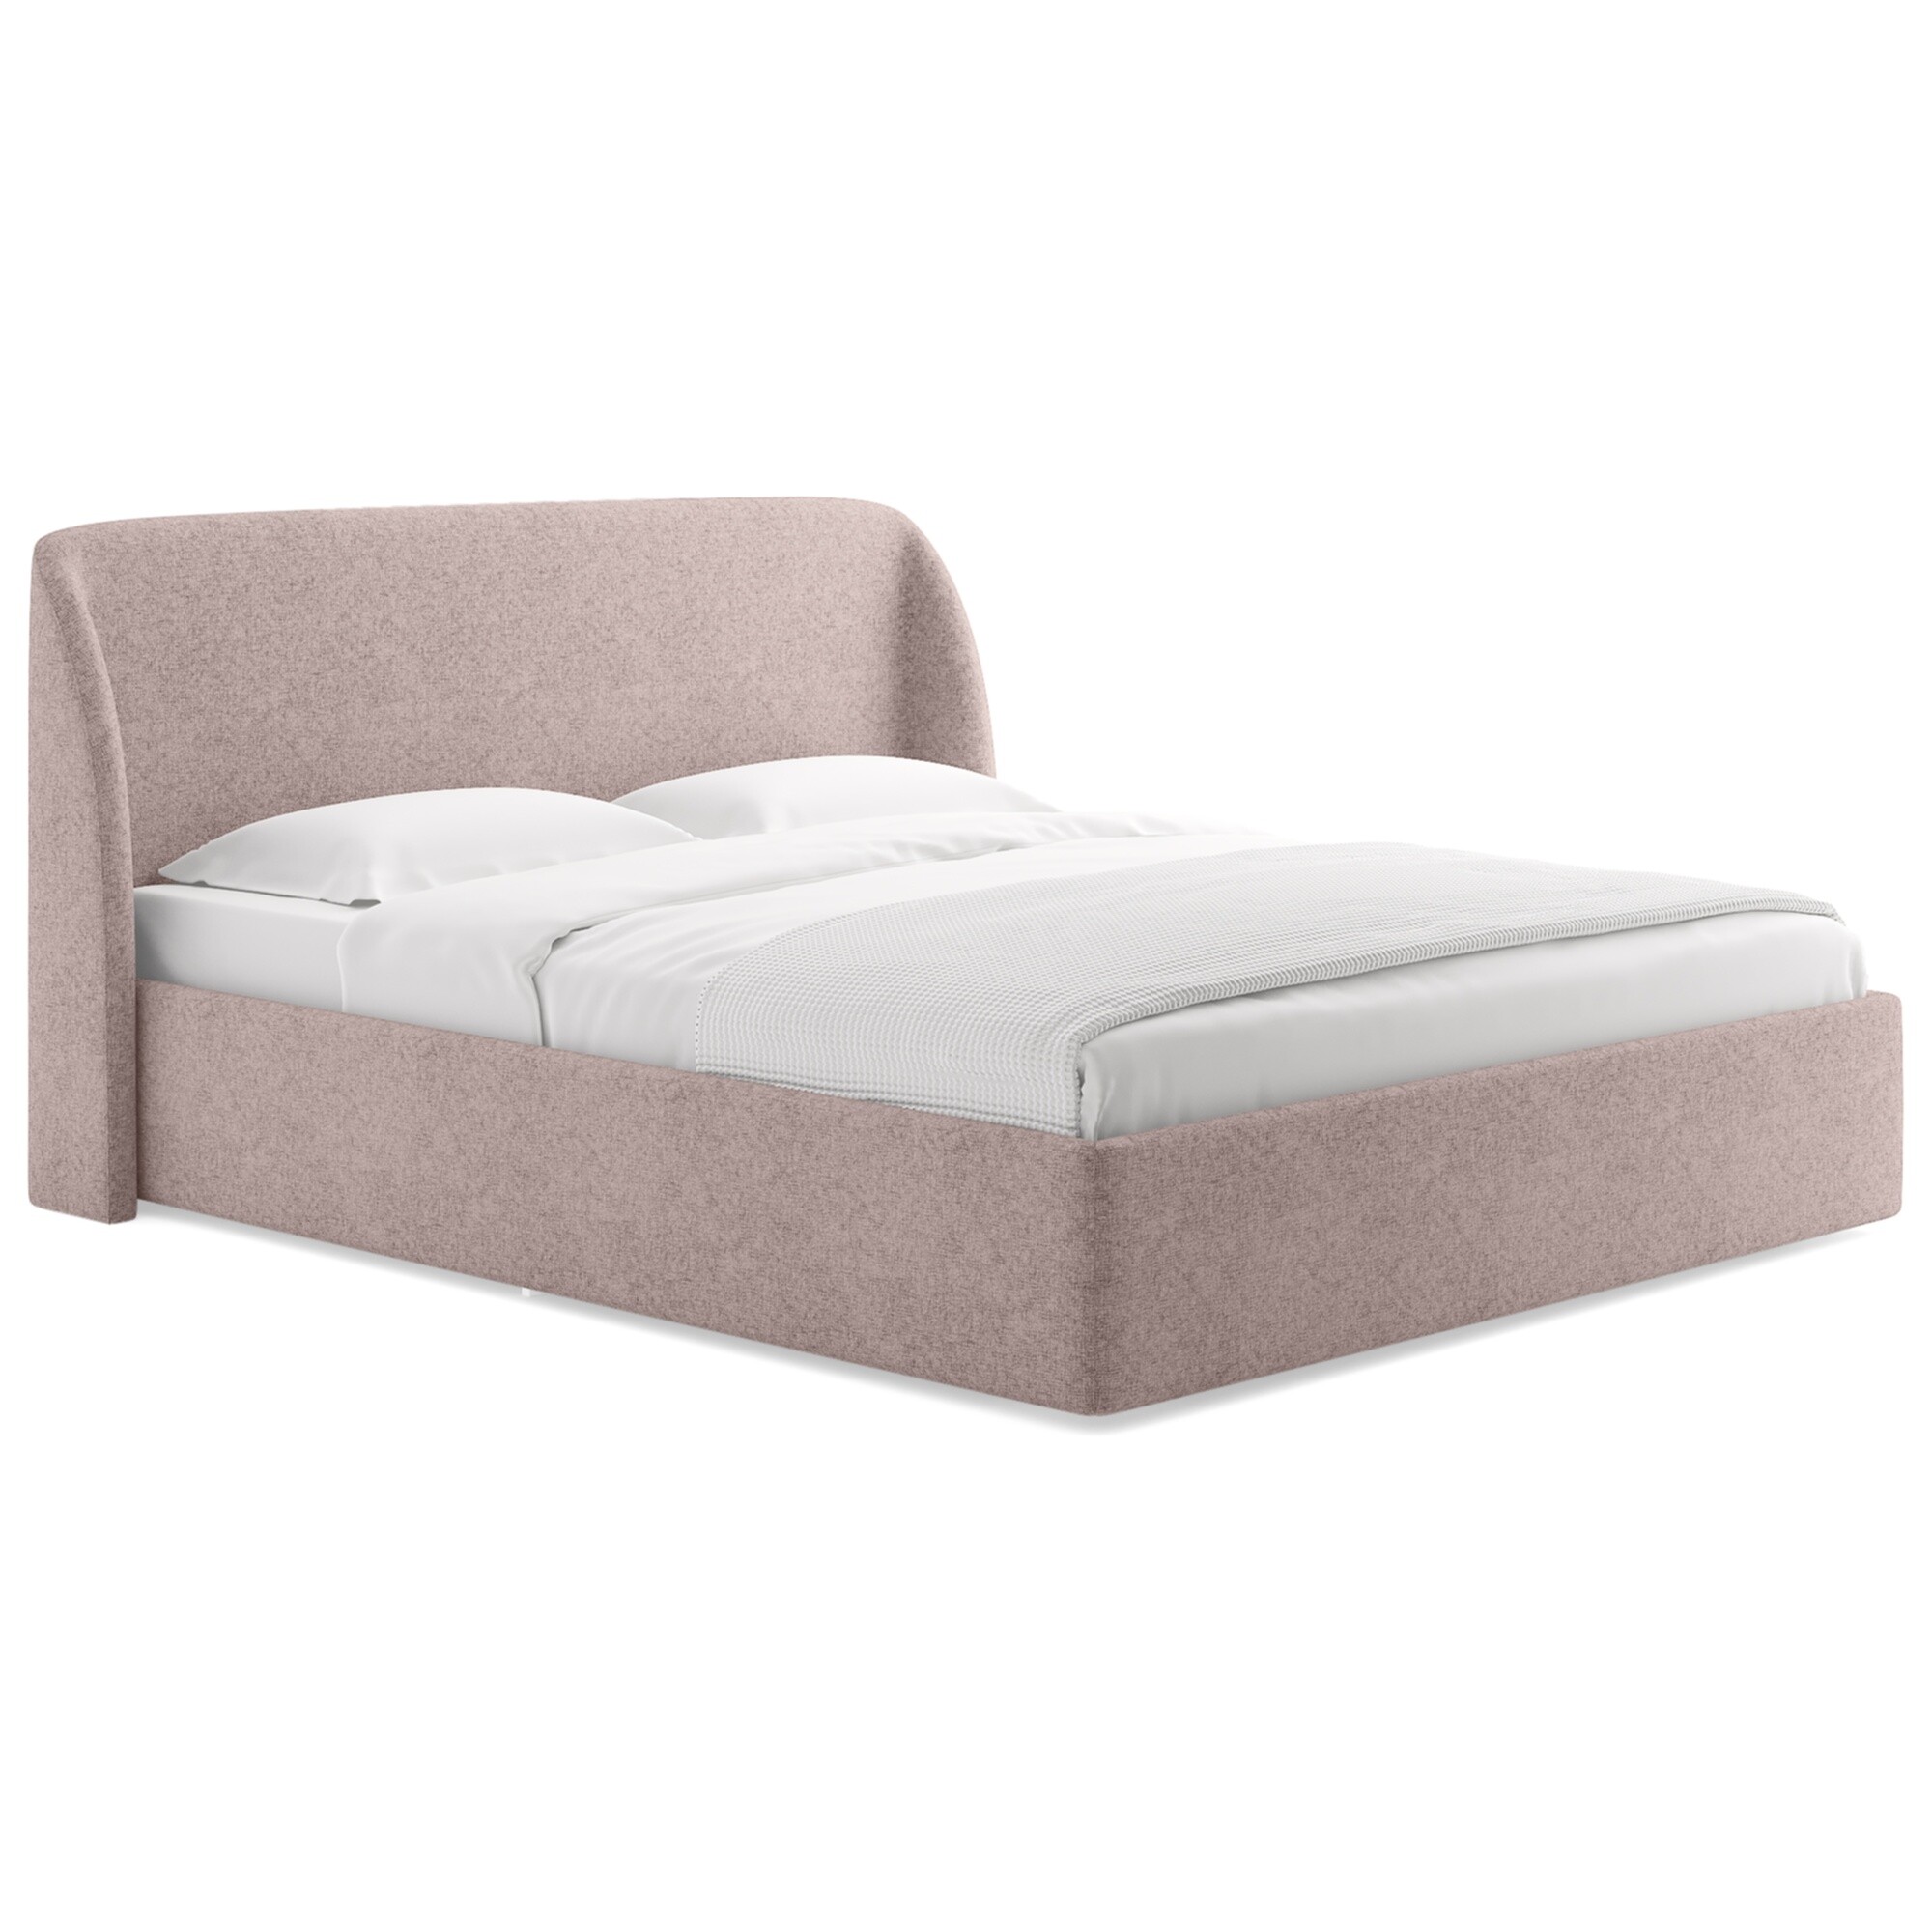 Кровать односпальная 90х200 см кашемир розовая Nicole